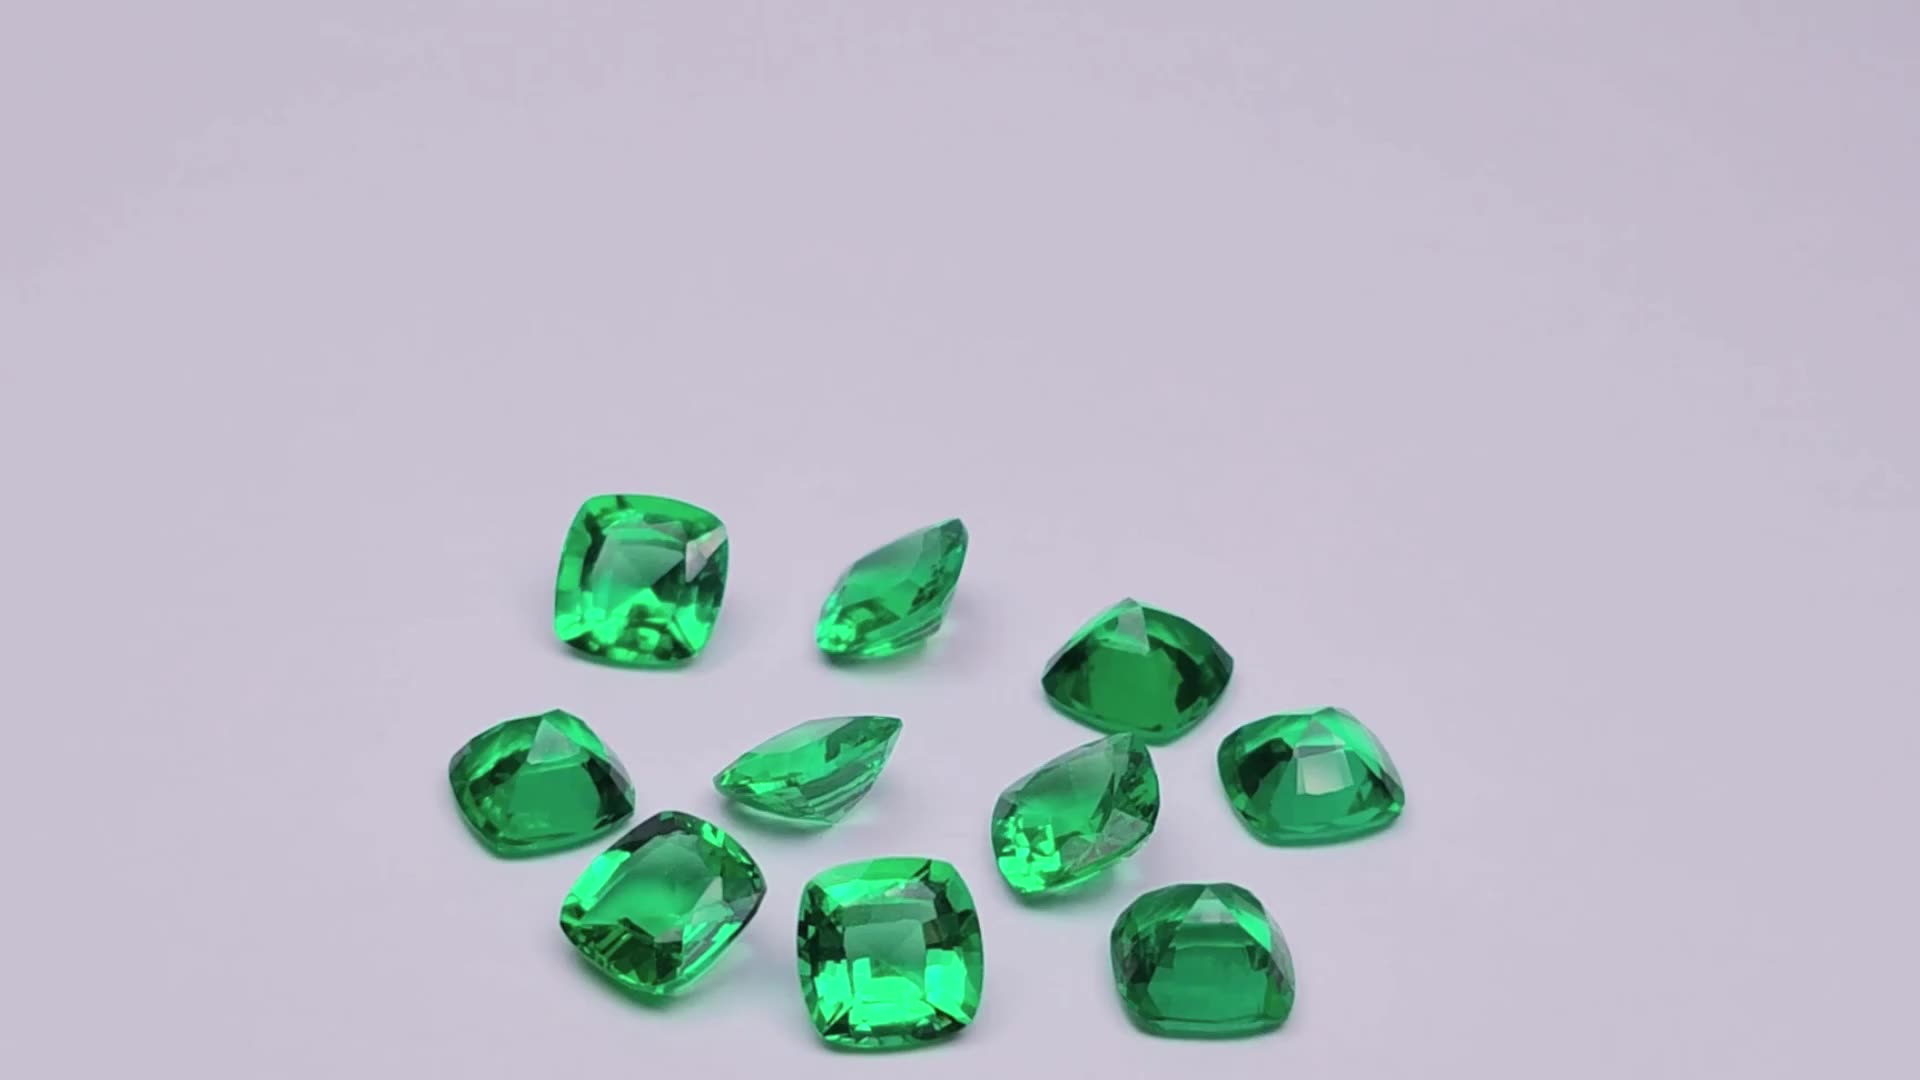 Gémica suelta al por mayor de alta calidad Colombia Esmeralda Cushion Cut Lab Colombia Emerald1